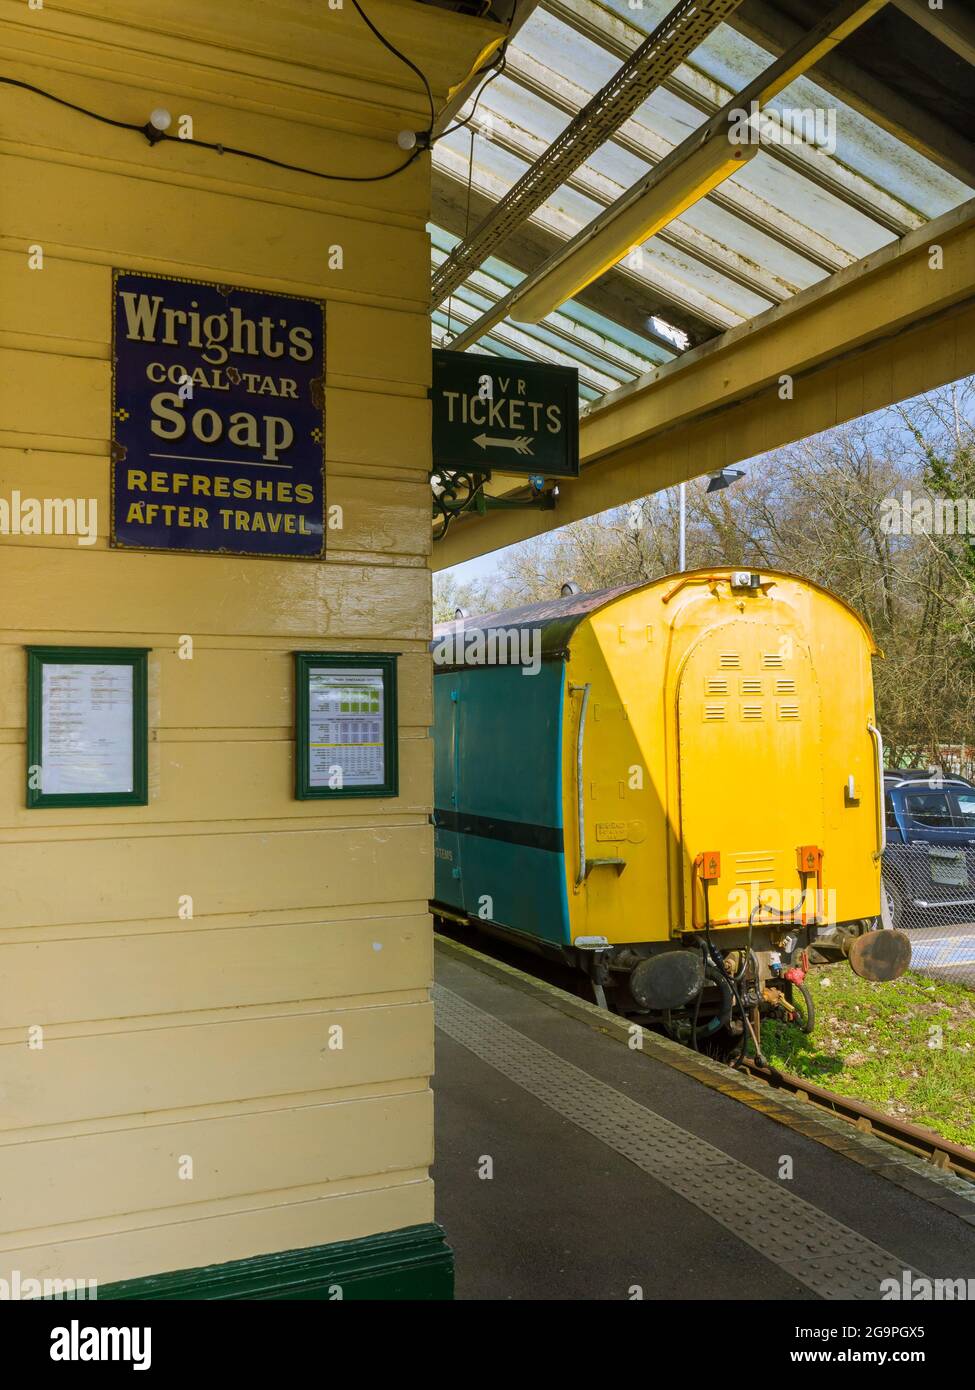 Wrights Coal Tar Soap Emailleschild auf der Seite der historischen Plattform von Eridge Station in East Sussex, UK, Teil der Spa Valley Heritage Railway. Stockfoto